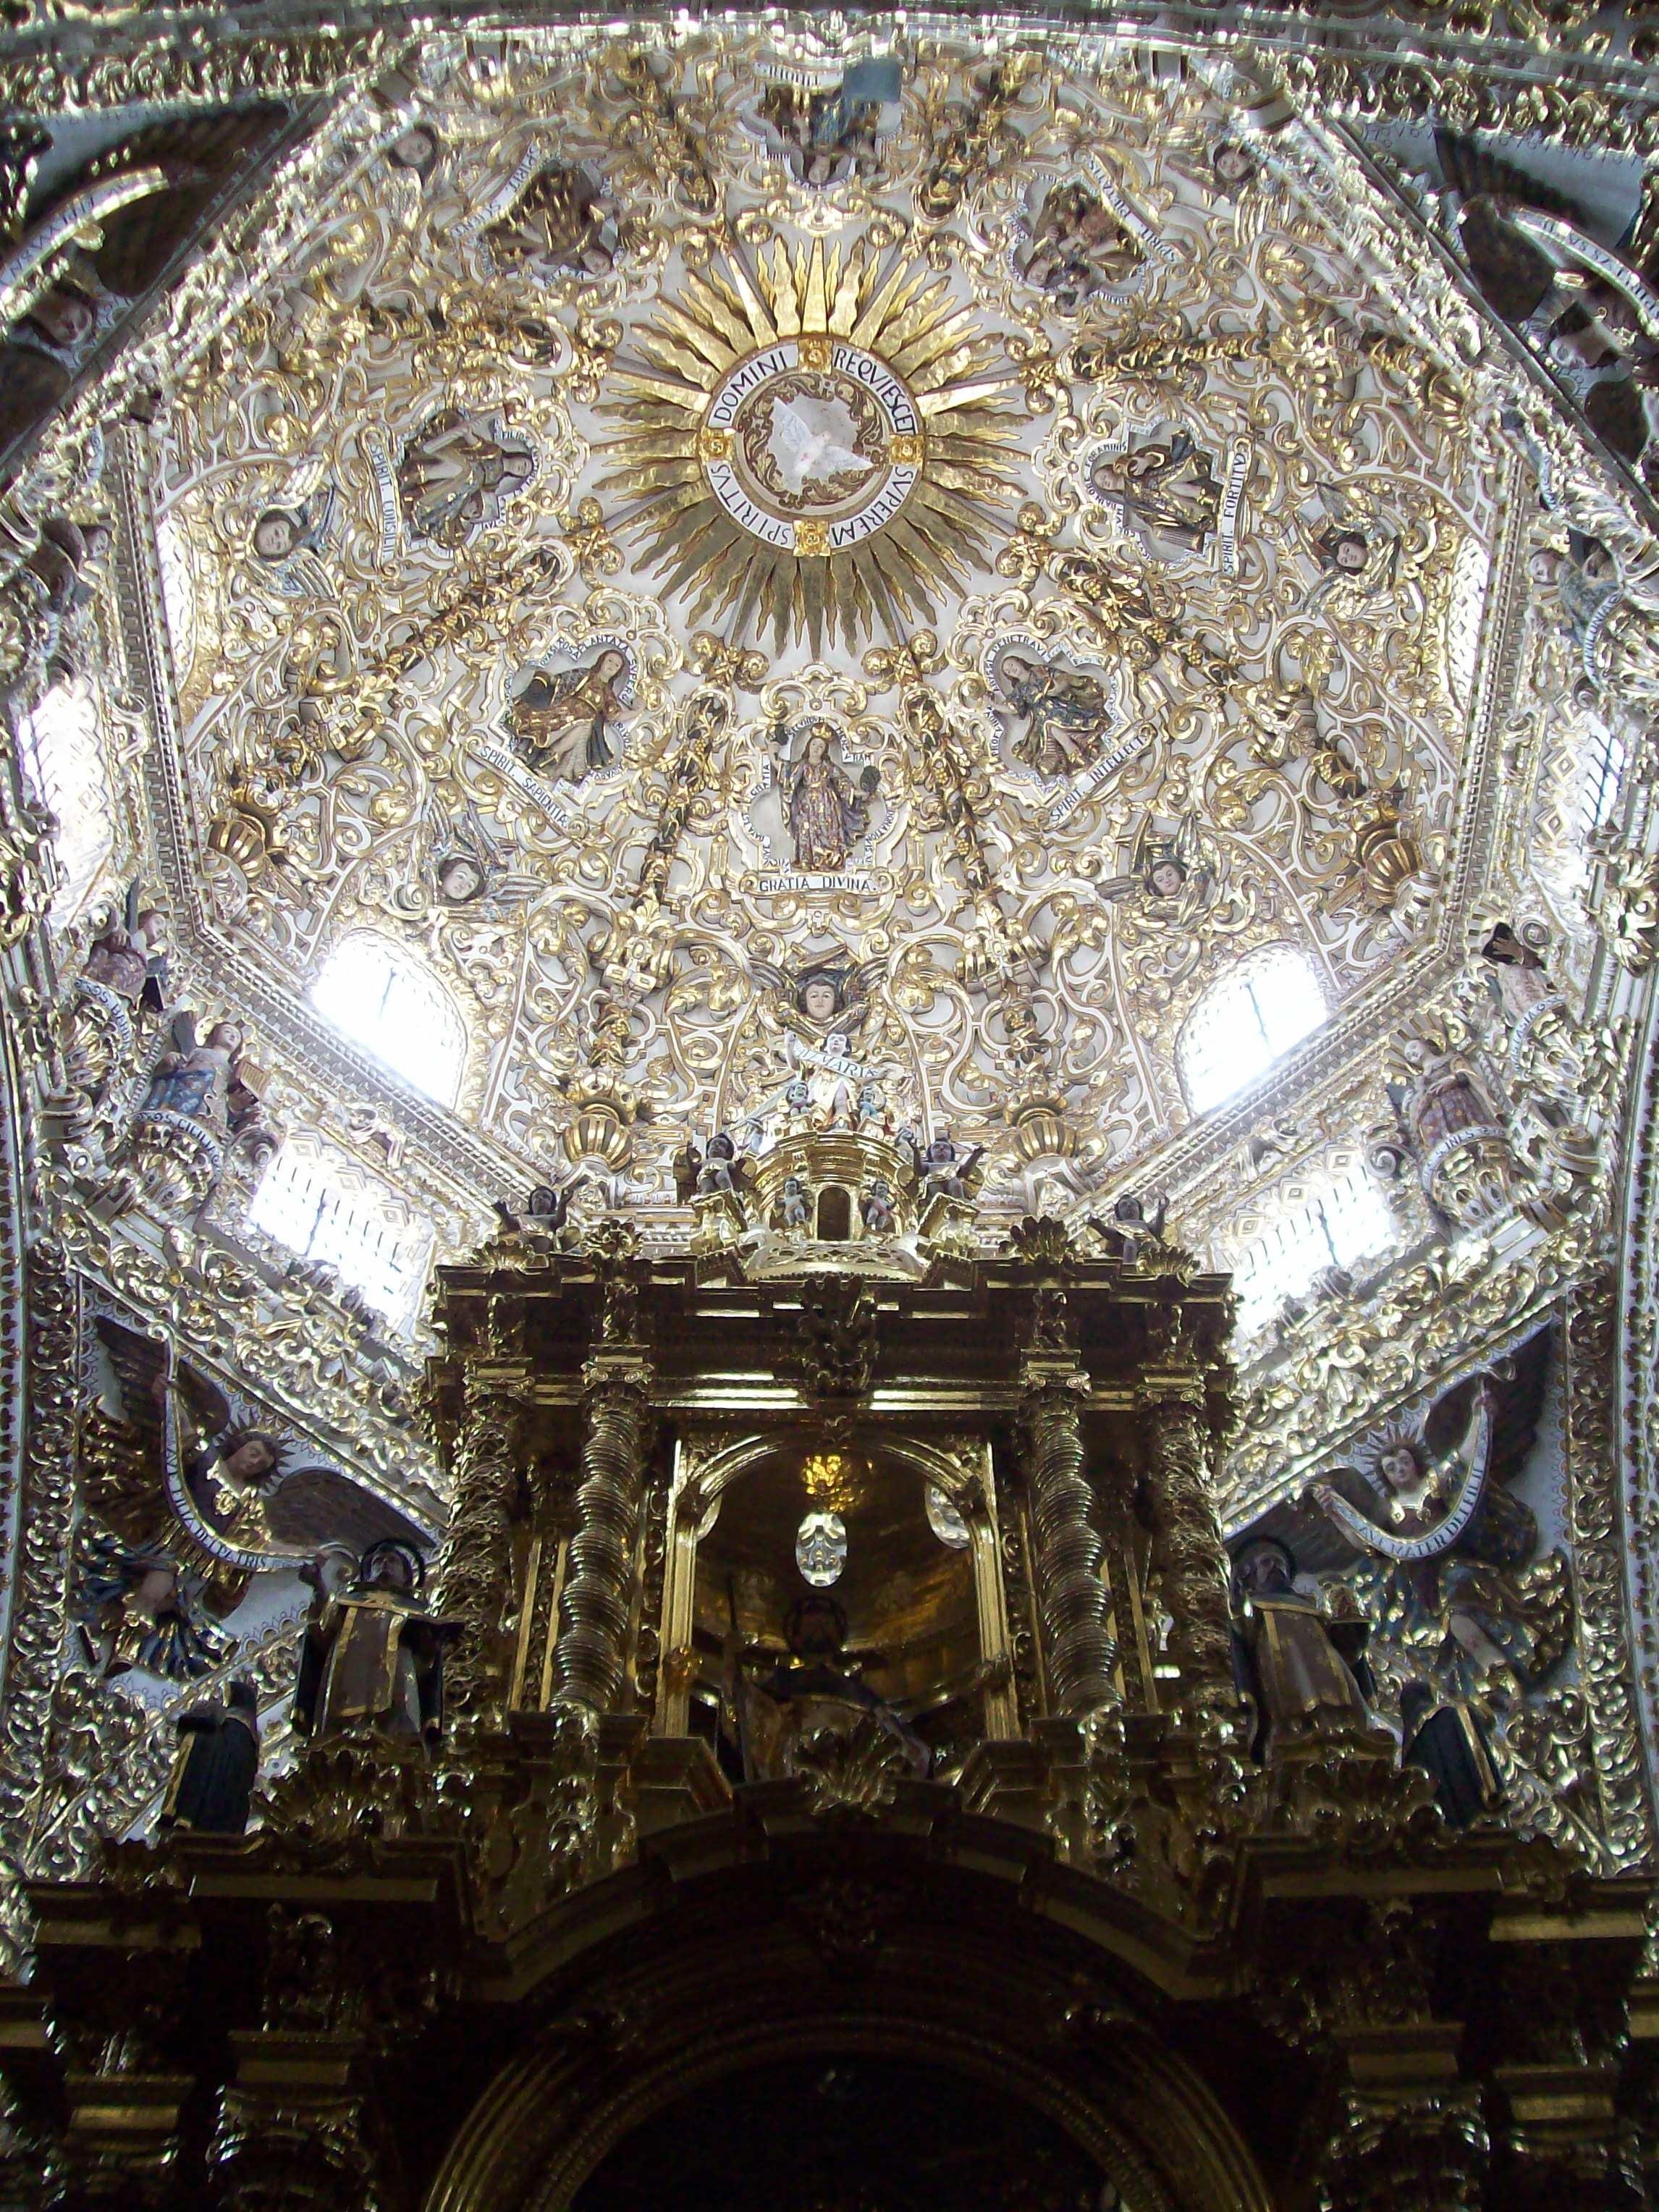 Capilla del Rosario en Puebla de Zaragoza: 9 opiniones y 8 fotos